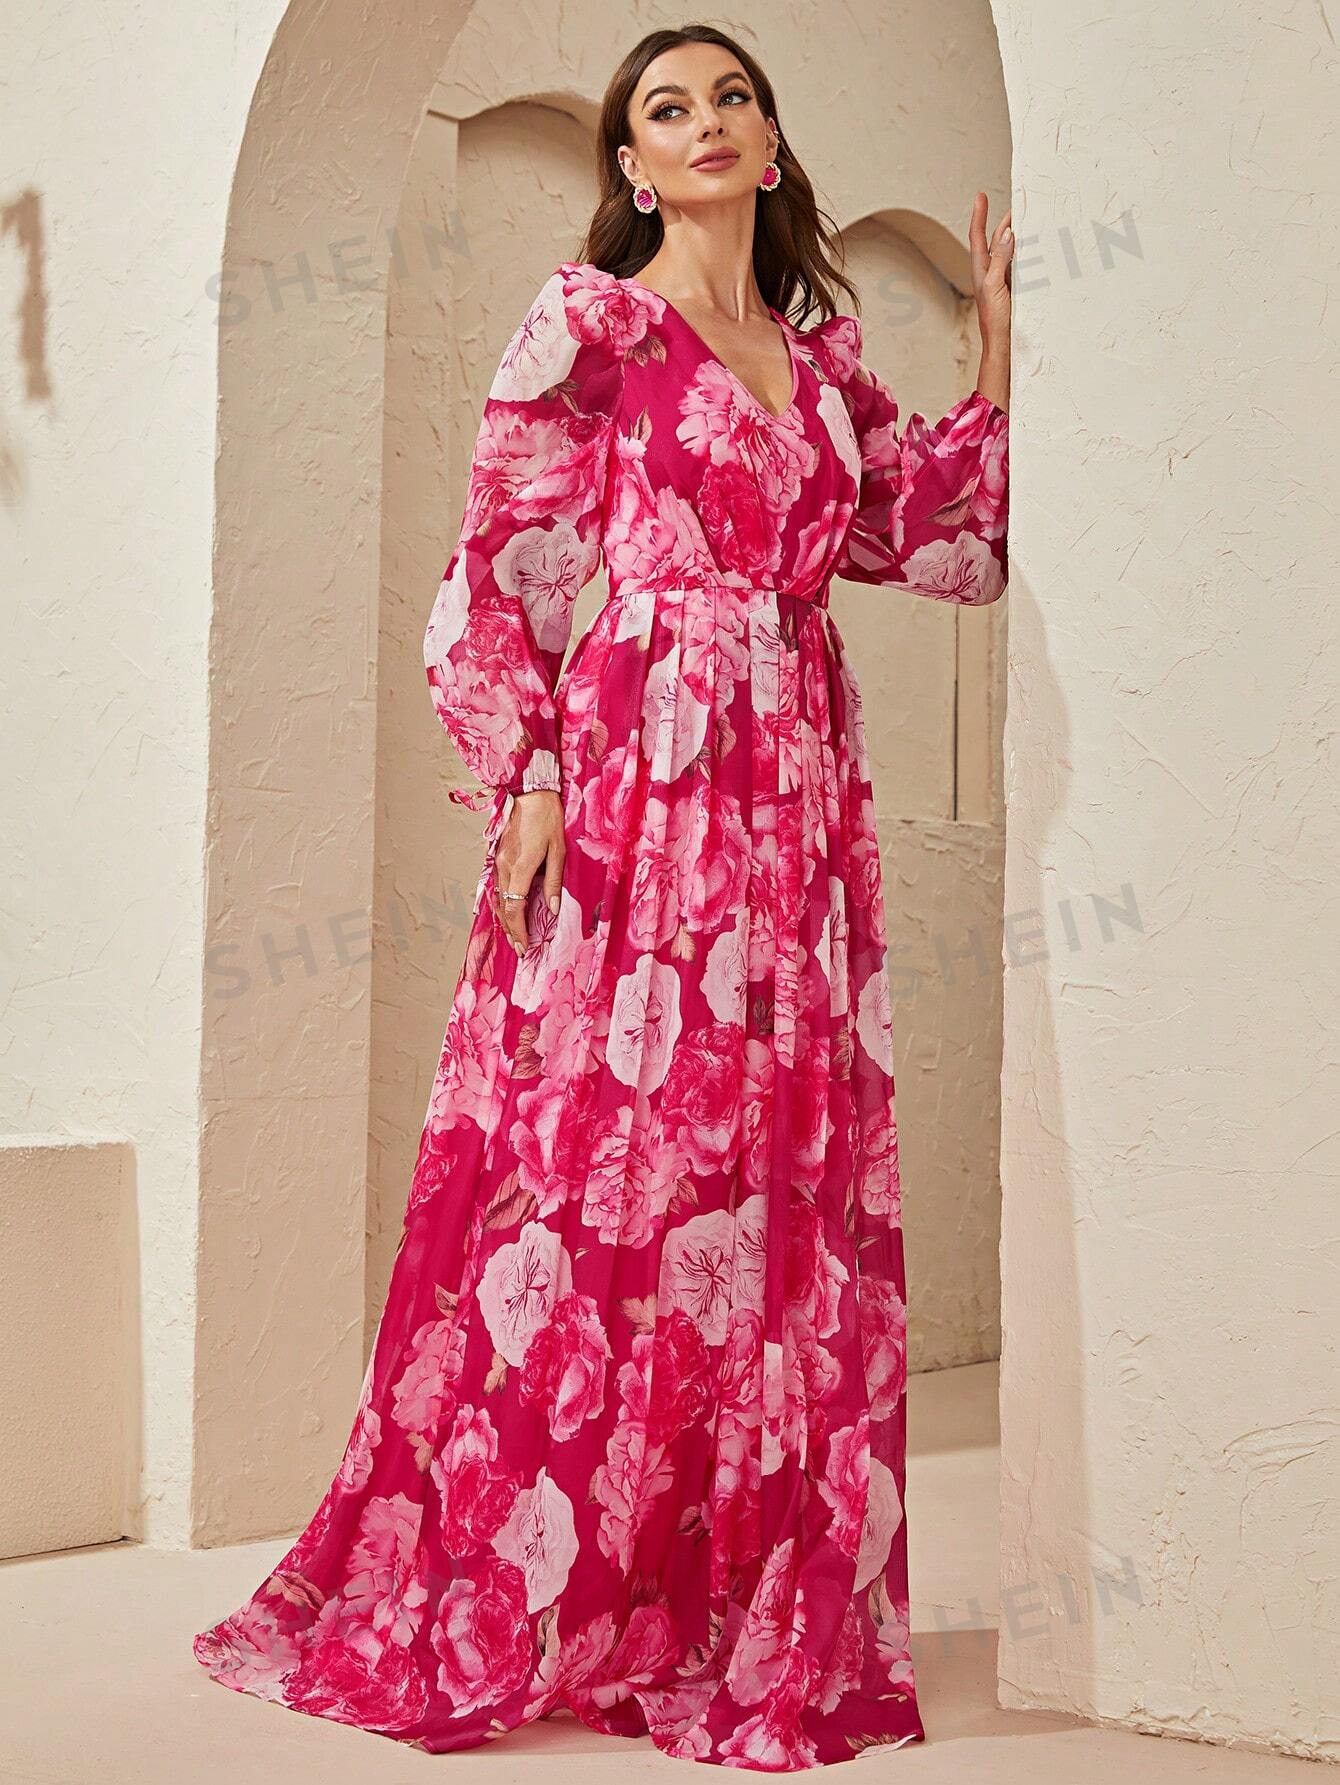 Giffniseti Женское платье с v-образным вырезом и поясом, ярко-розовый женское платье с цветочным принтом длинным рукавом фонариком глубоким v образным вырезом и рюшами элегантное облегающее праздничное плат